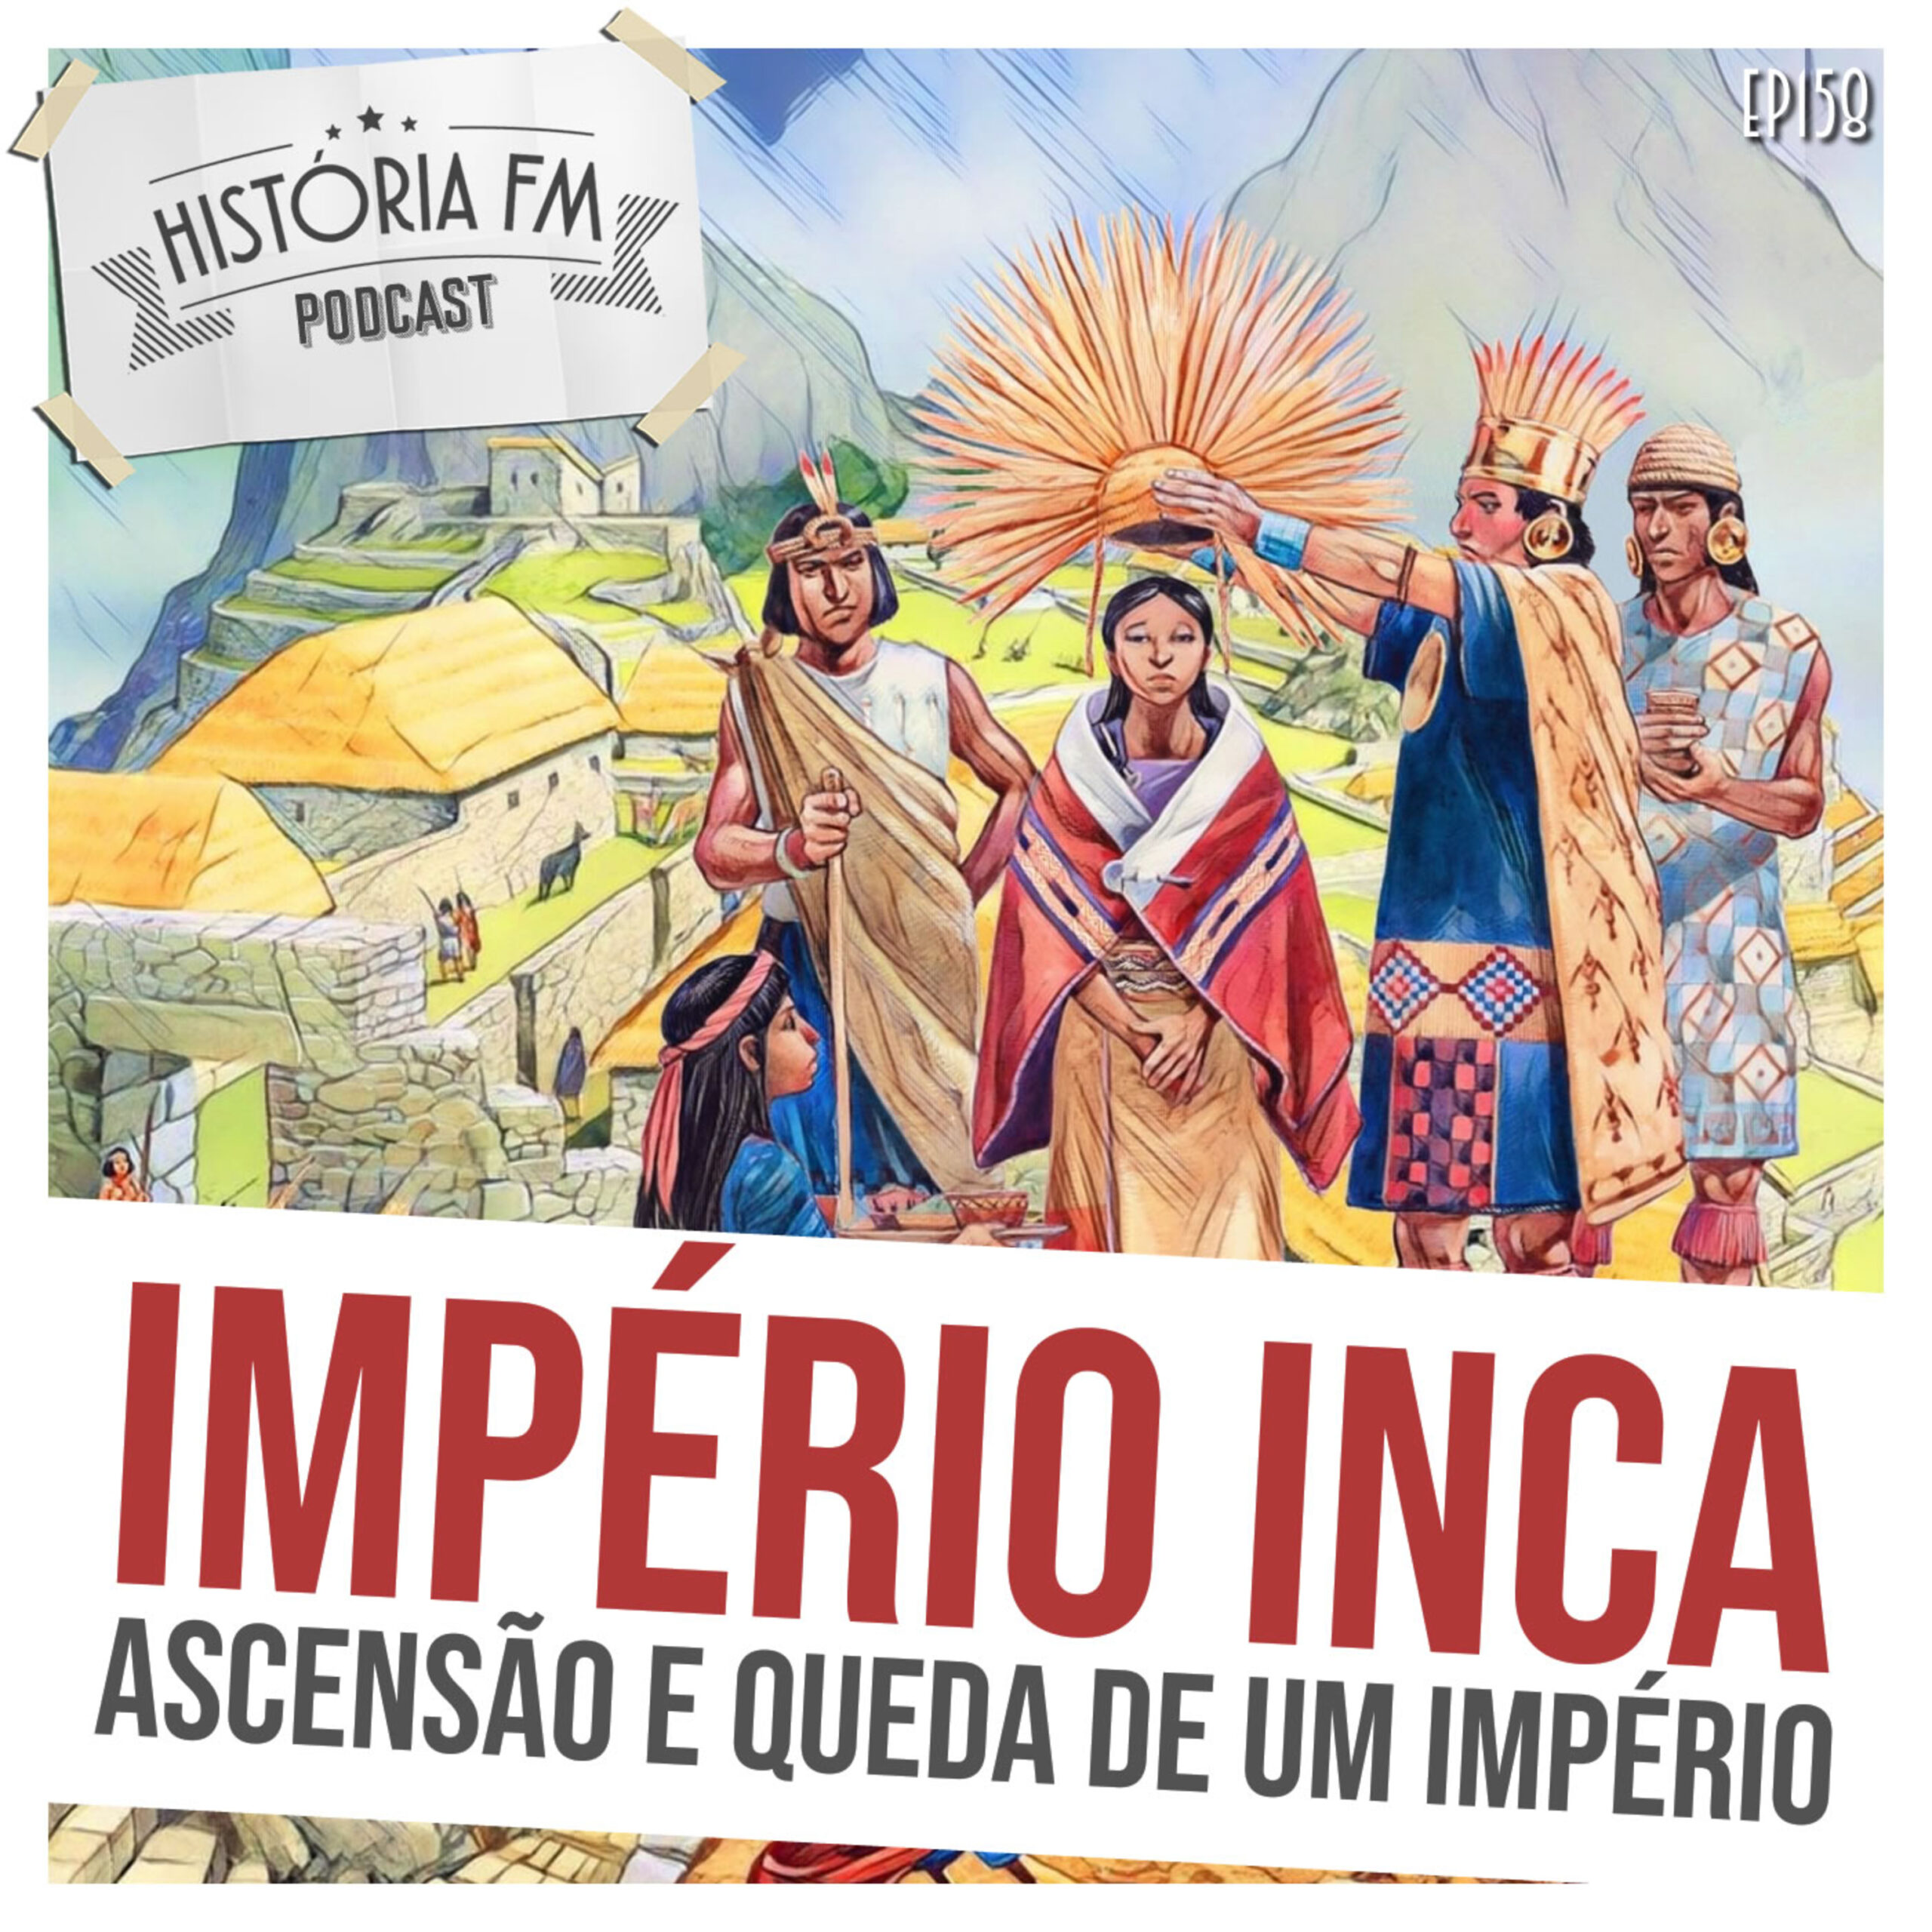 Império Inca: Ascensão e queda de um império